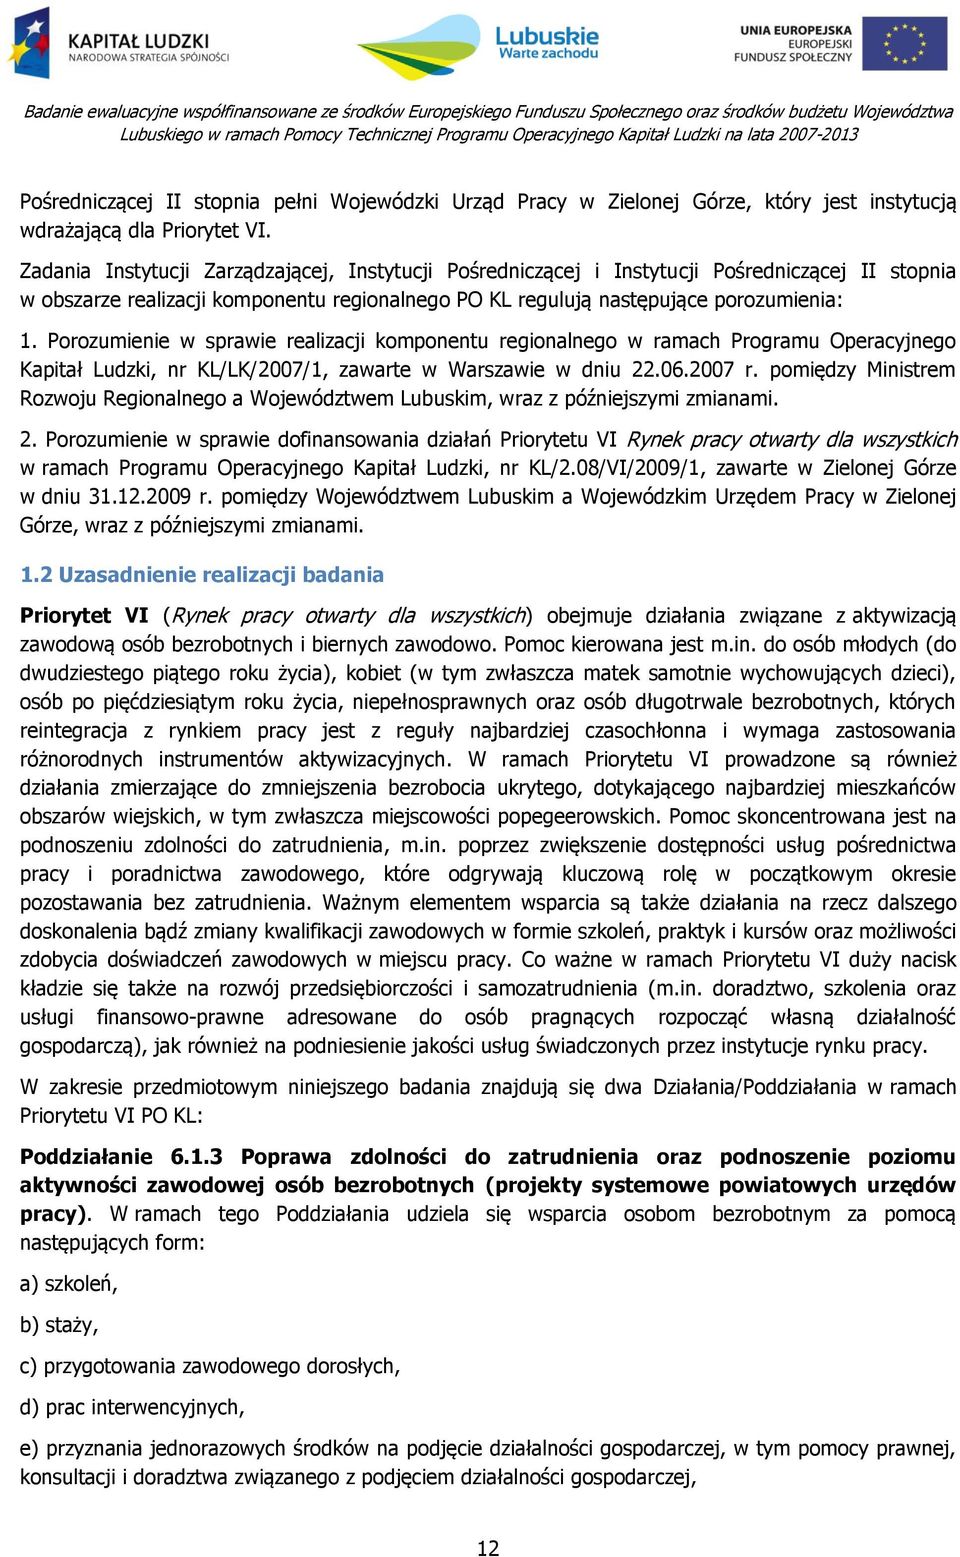 Porozumienie w sprawie realizacji komponentu regionalnego w ramach Programu Operacyjnego Kapitał Ludzki, nr KL/LK/2007/1, zawarte w Warszawie w dniu 22.06.2007 r.